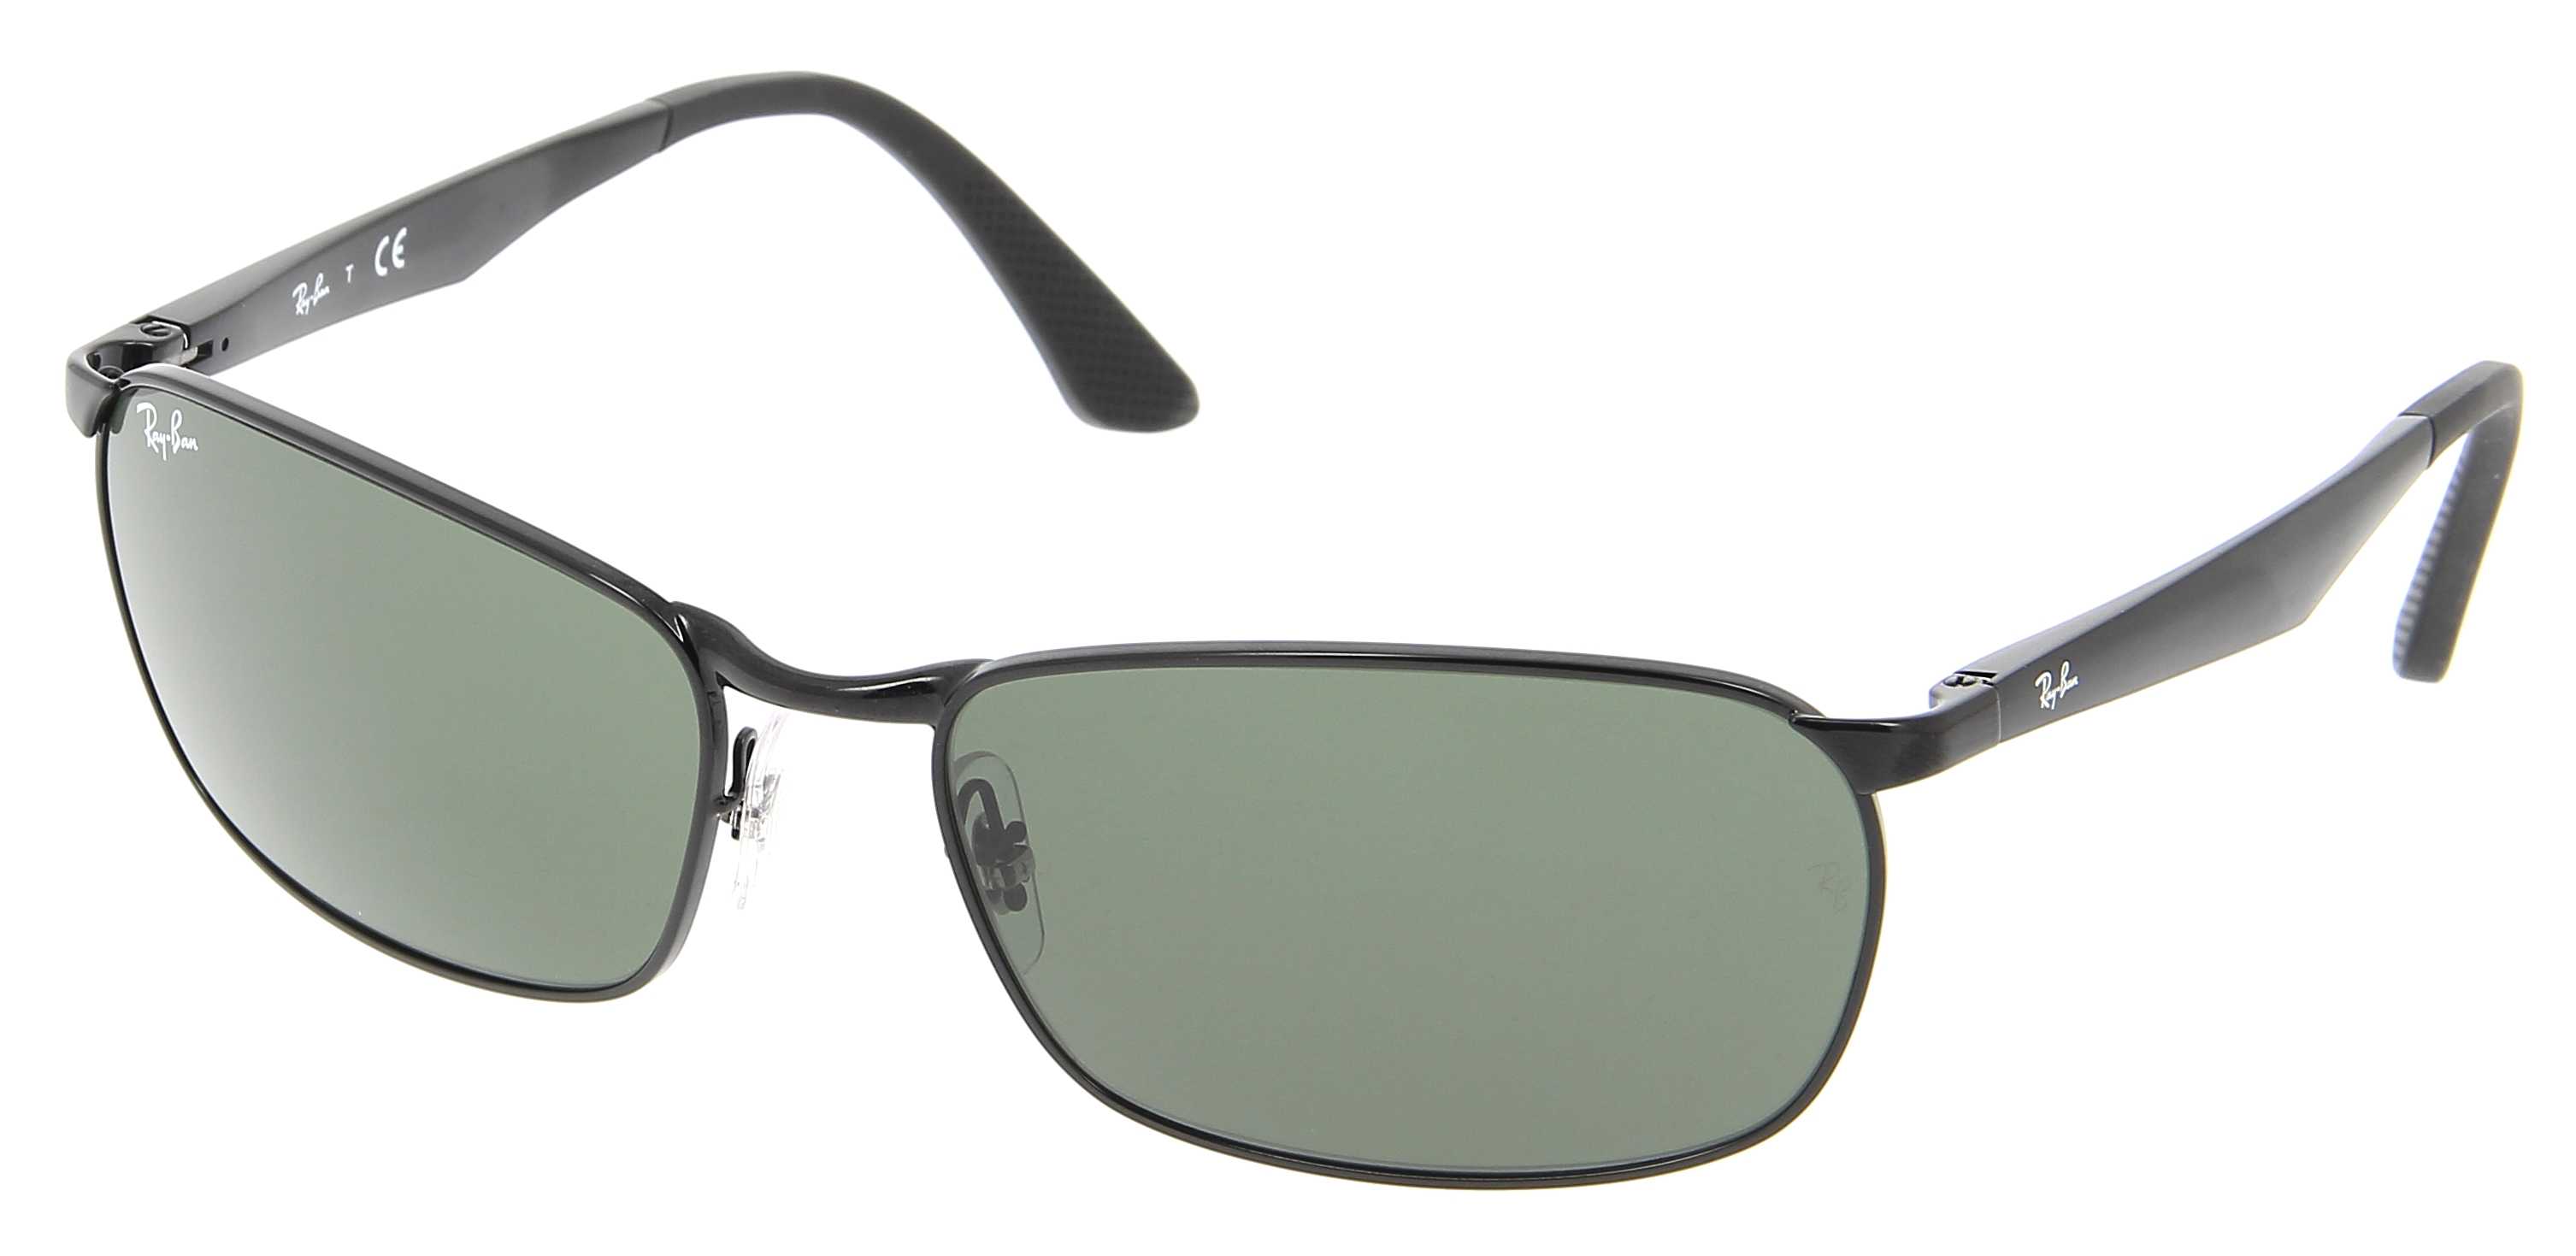 Sunglasses Ray Ban Rb 3534 002 59 17 Man Noir Rectangle Frames Full Frame Glasses Sport